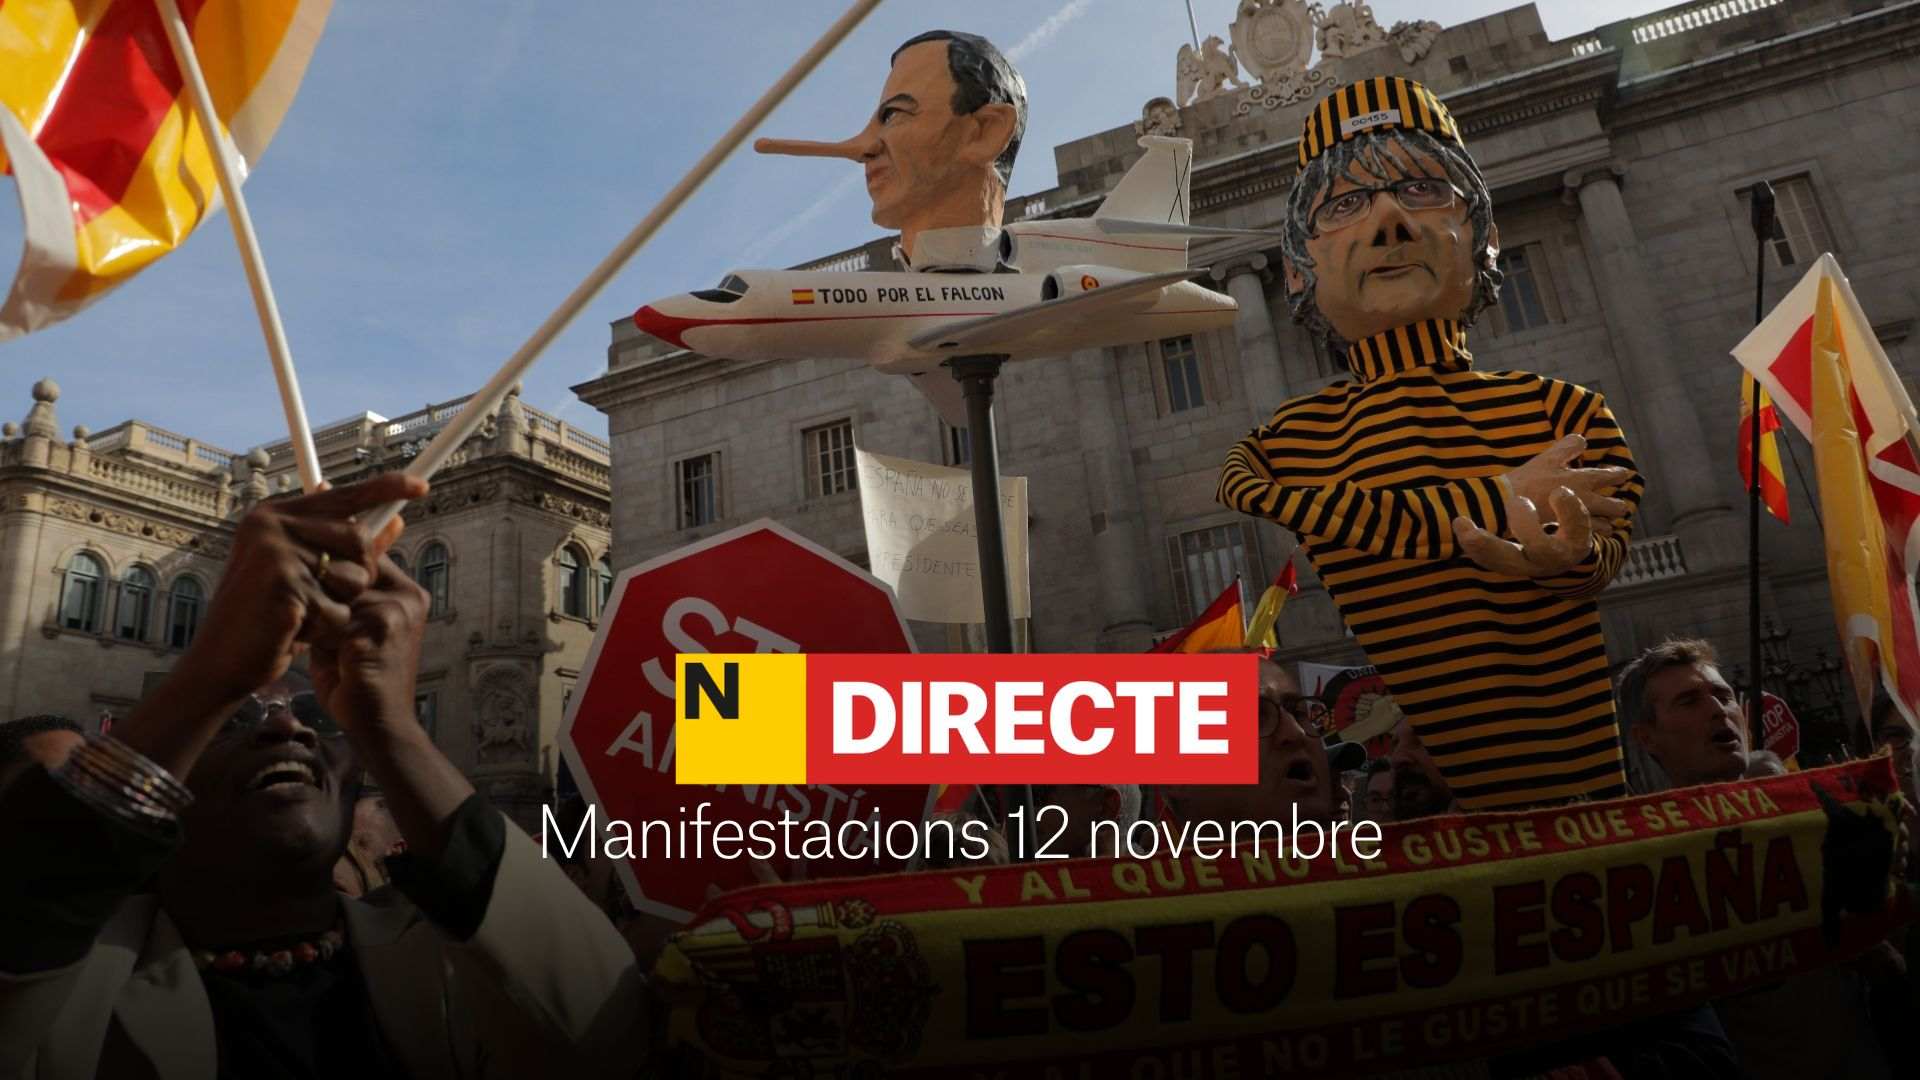 Manifestacions avui a Barcelona, Madrid i l'Estat, DIRECTE | Última hora i reaccions a les protestes contra l'amnistia